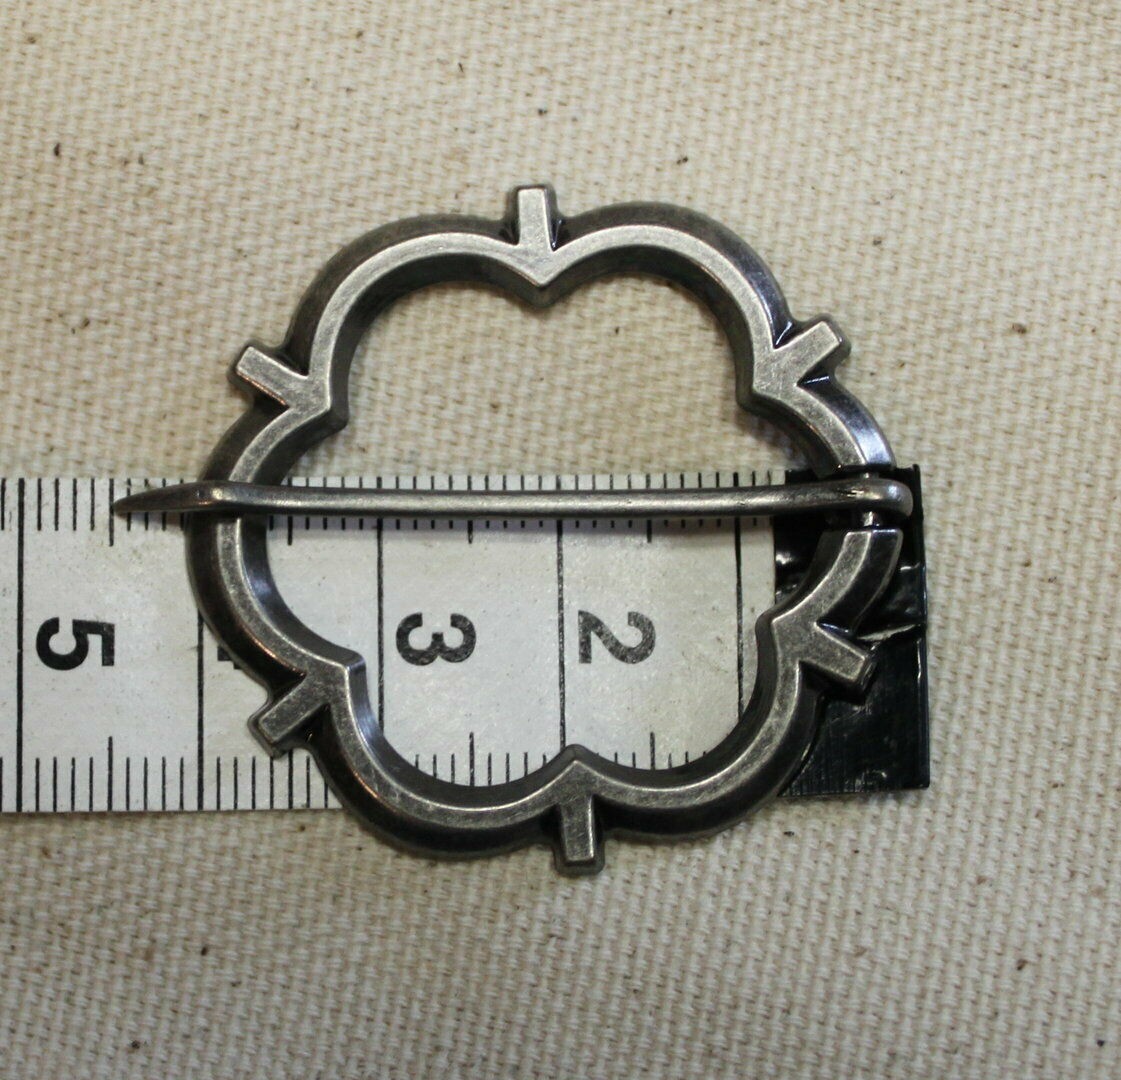 Mittelalter Fibel rund ca. 4 cm Farbe Silber oder Messing